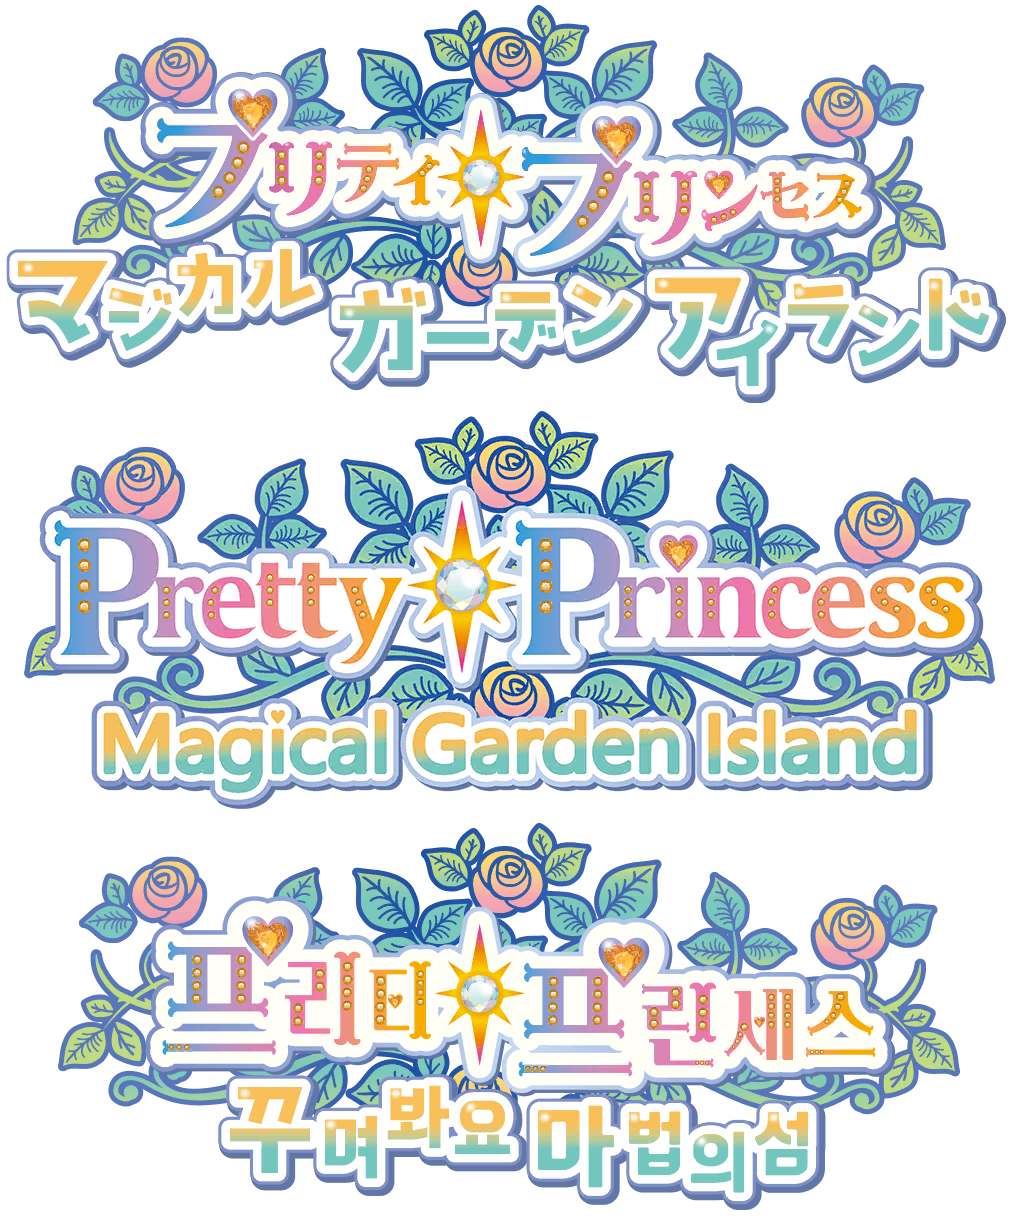 Pretty Princess Magical Garden Island - Logos